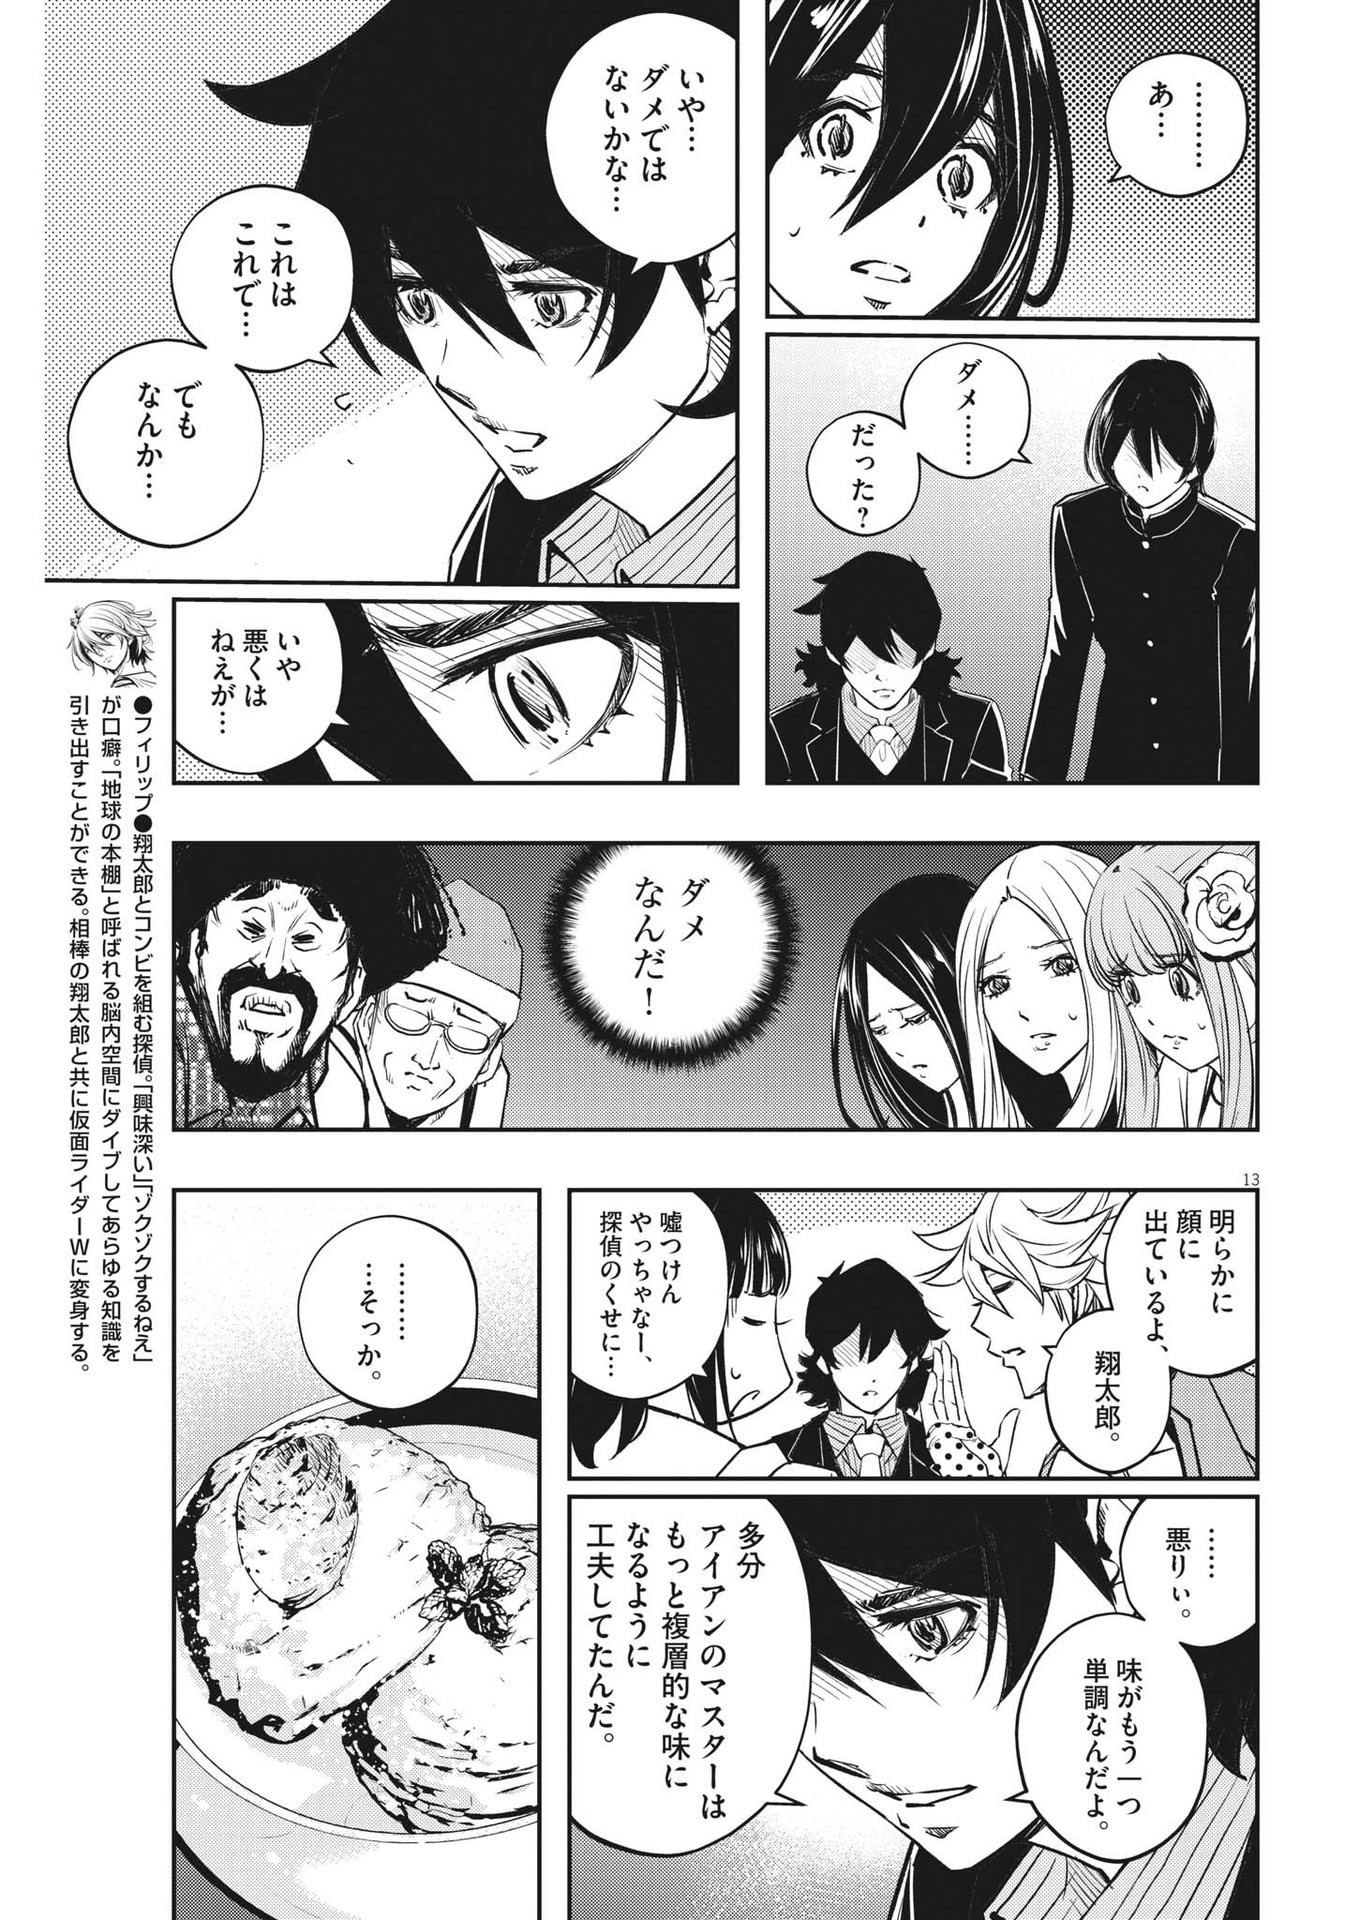 Manga Mogura RE on X: Kamen Rider W: Fuuto Tantei vol 13 by Masaki Satou  & Riku Sanjou.  / X